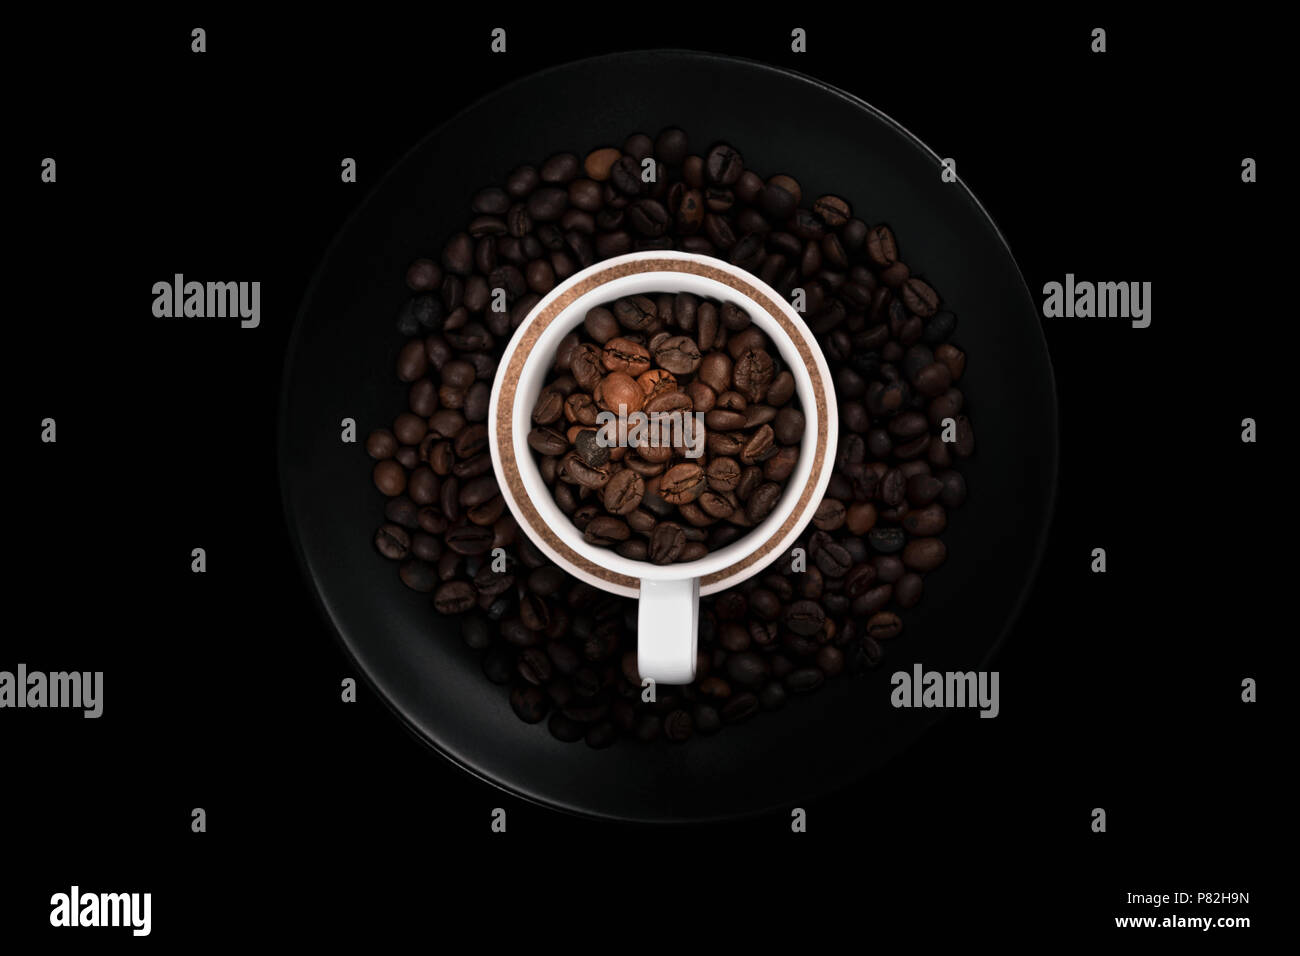 Weiße Tasse voller Kaffeebohnen auf schwarze Platte mit gerösteten Kaffeebohnen gefüllt. Mit negativen Raum auf schwarzem Hintergrund. Stockfoto